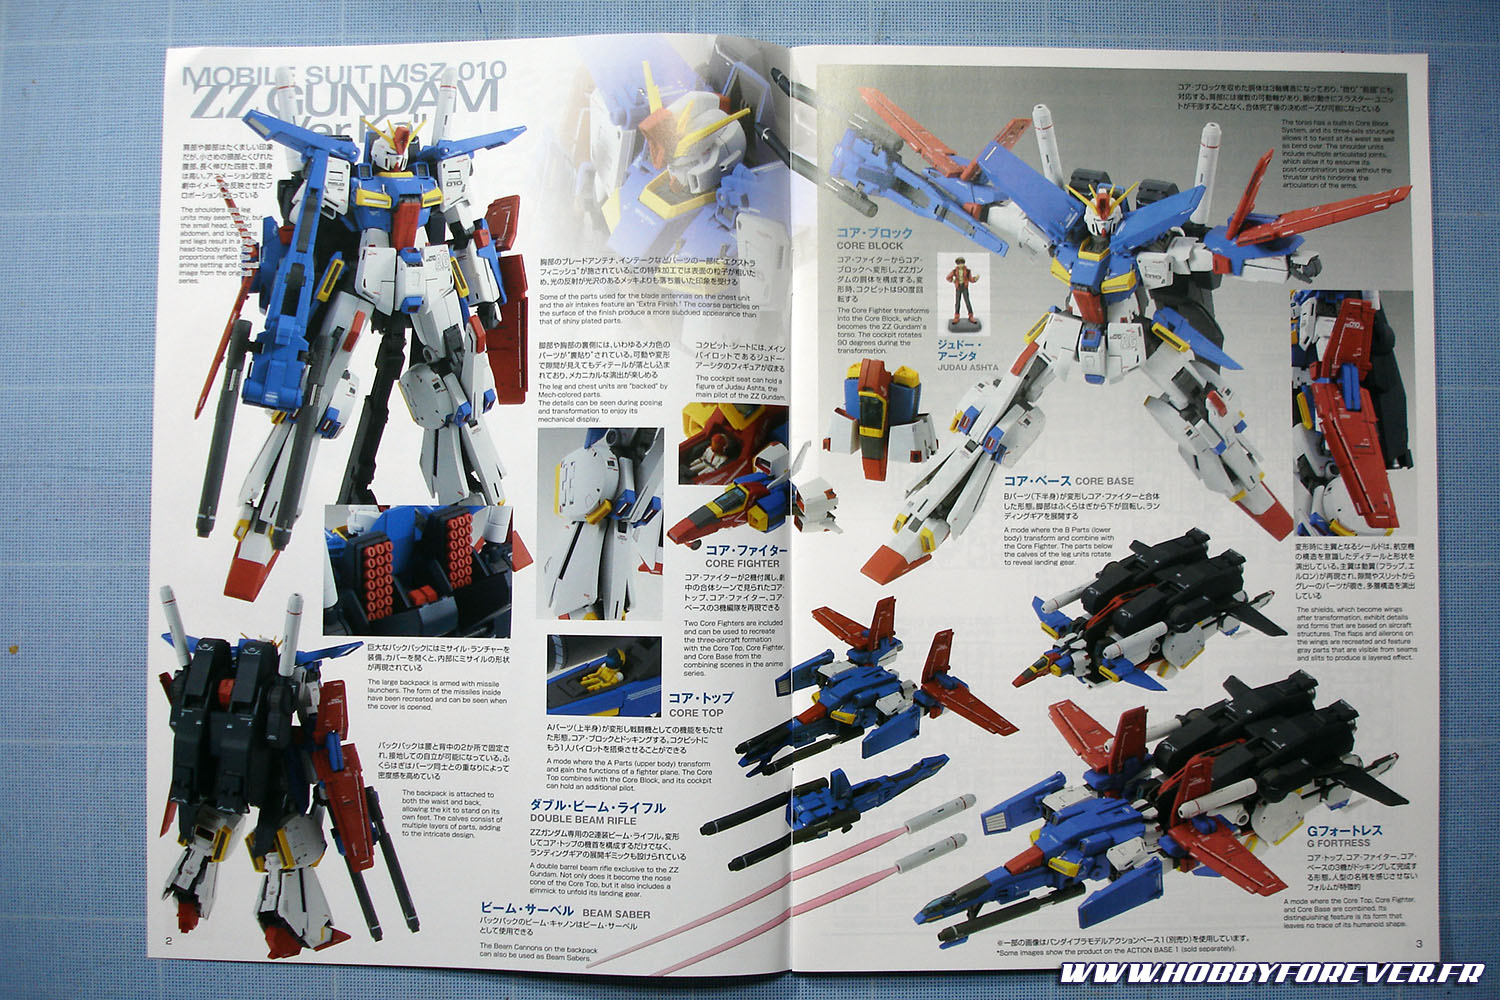 Sans rentrer dans le détail du montage, voici pour conclure quelques photos du ZZ Gundam ver.Ka, issus de la notice.